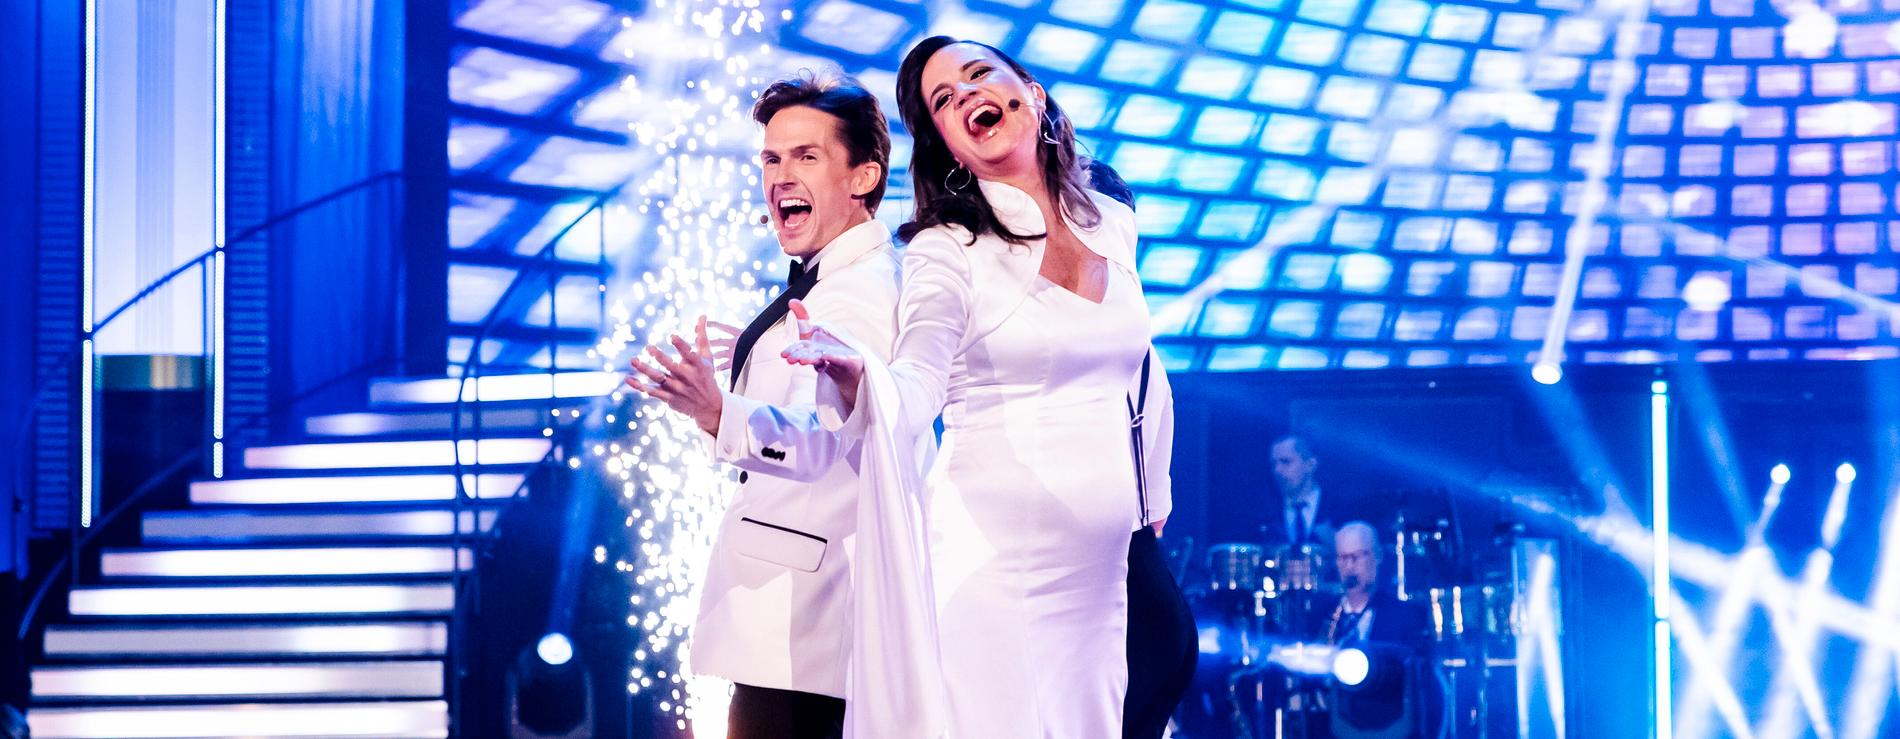 David Lindgren och Petra Mede i premiären av ”Let’s dance” i TV4.